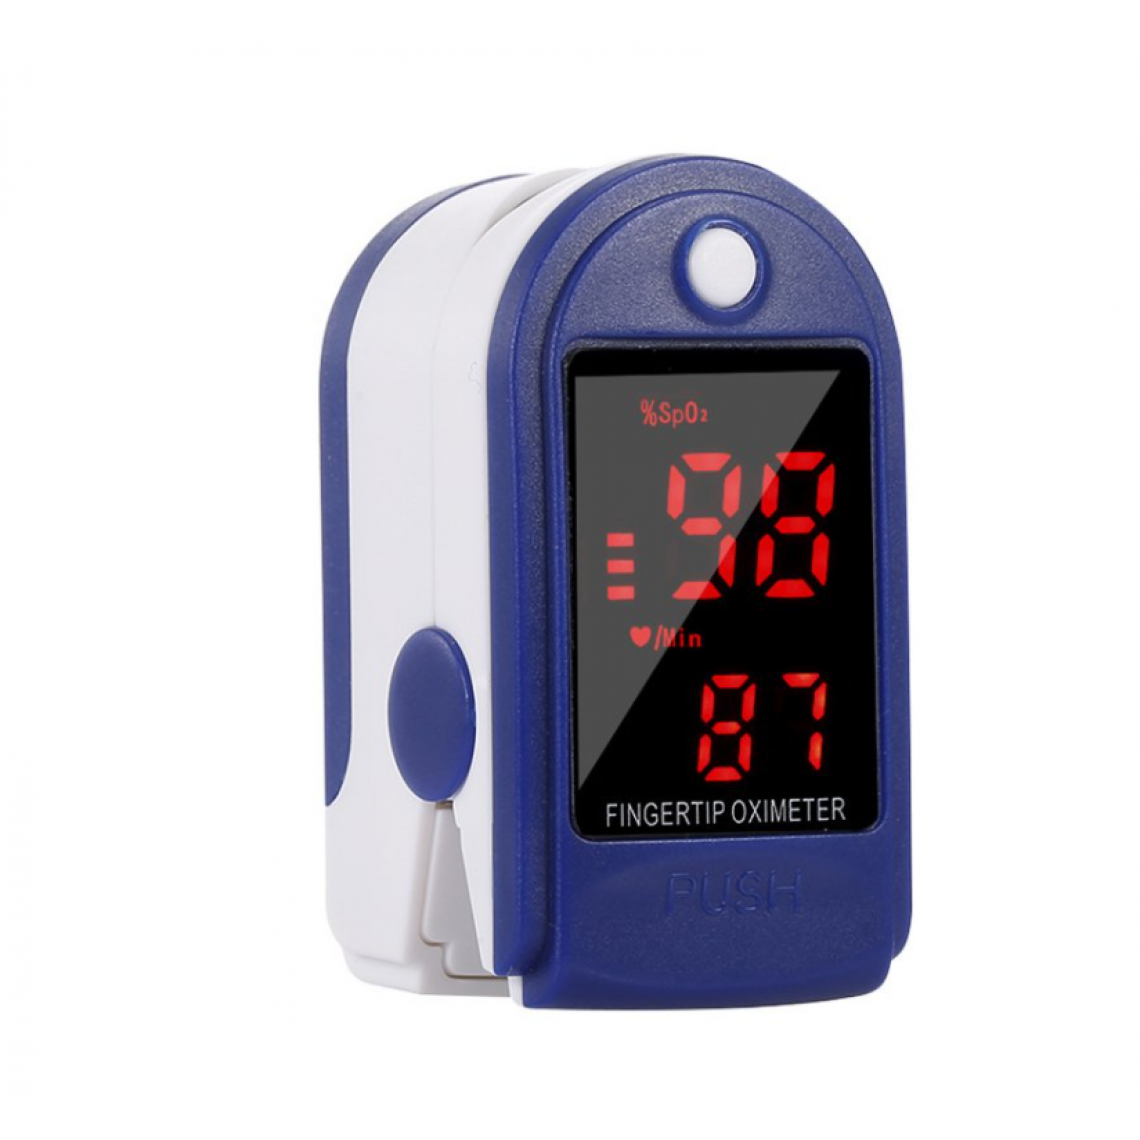 Corbin - Moniteur de fréquence cardiaque d'oxygène sanguin d'oxymètre de pouls de doigt portatif médical - Autre appareil de mesure